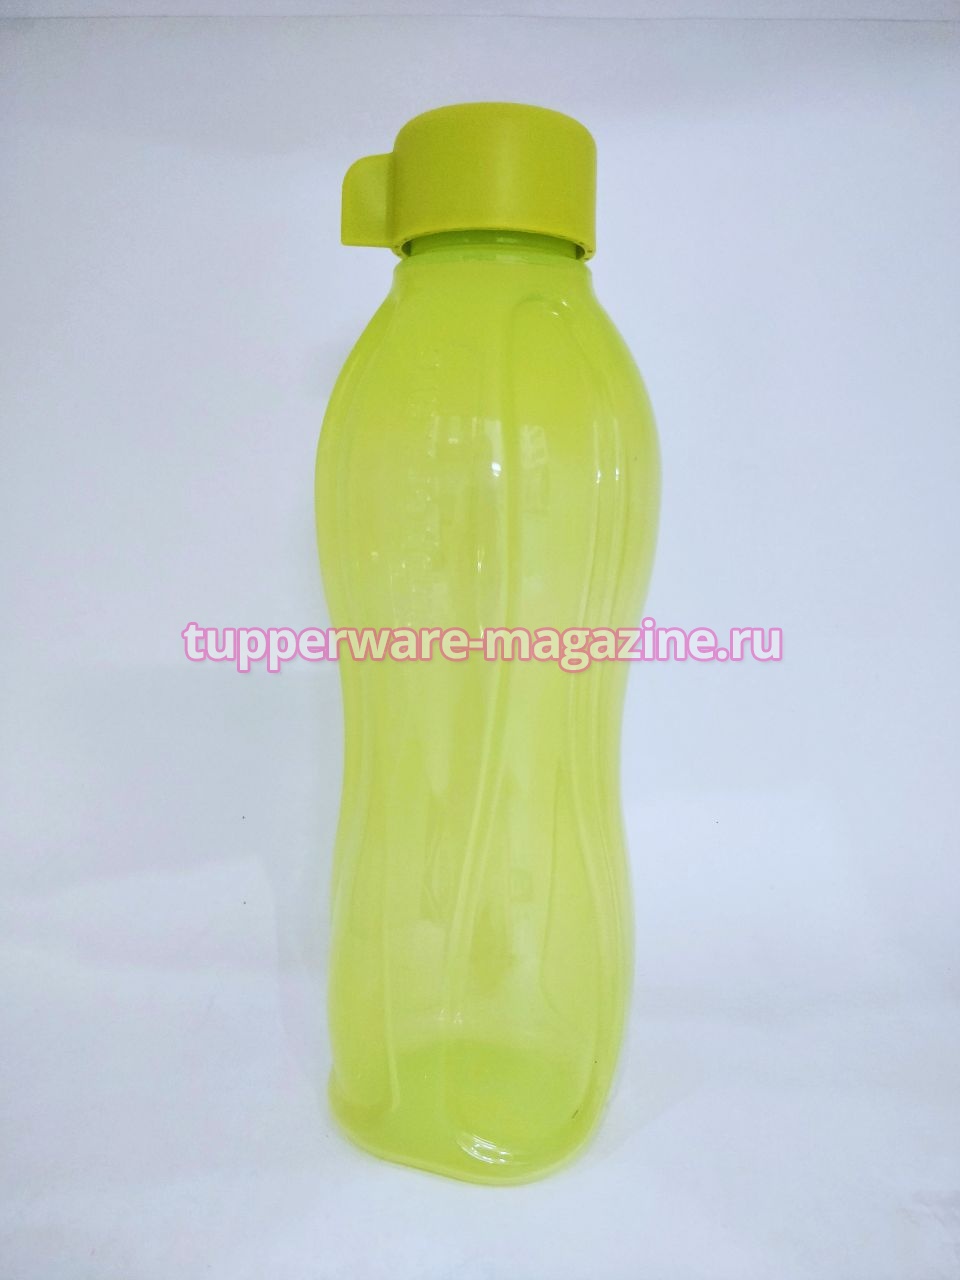 Эко-бутылка 750 мл без клапана в салатовом цвете